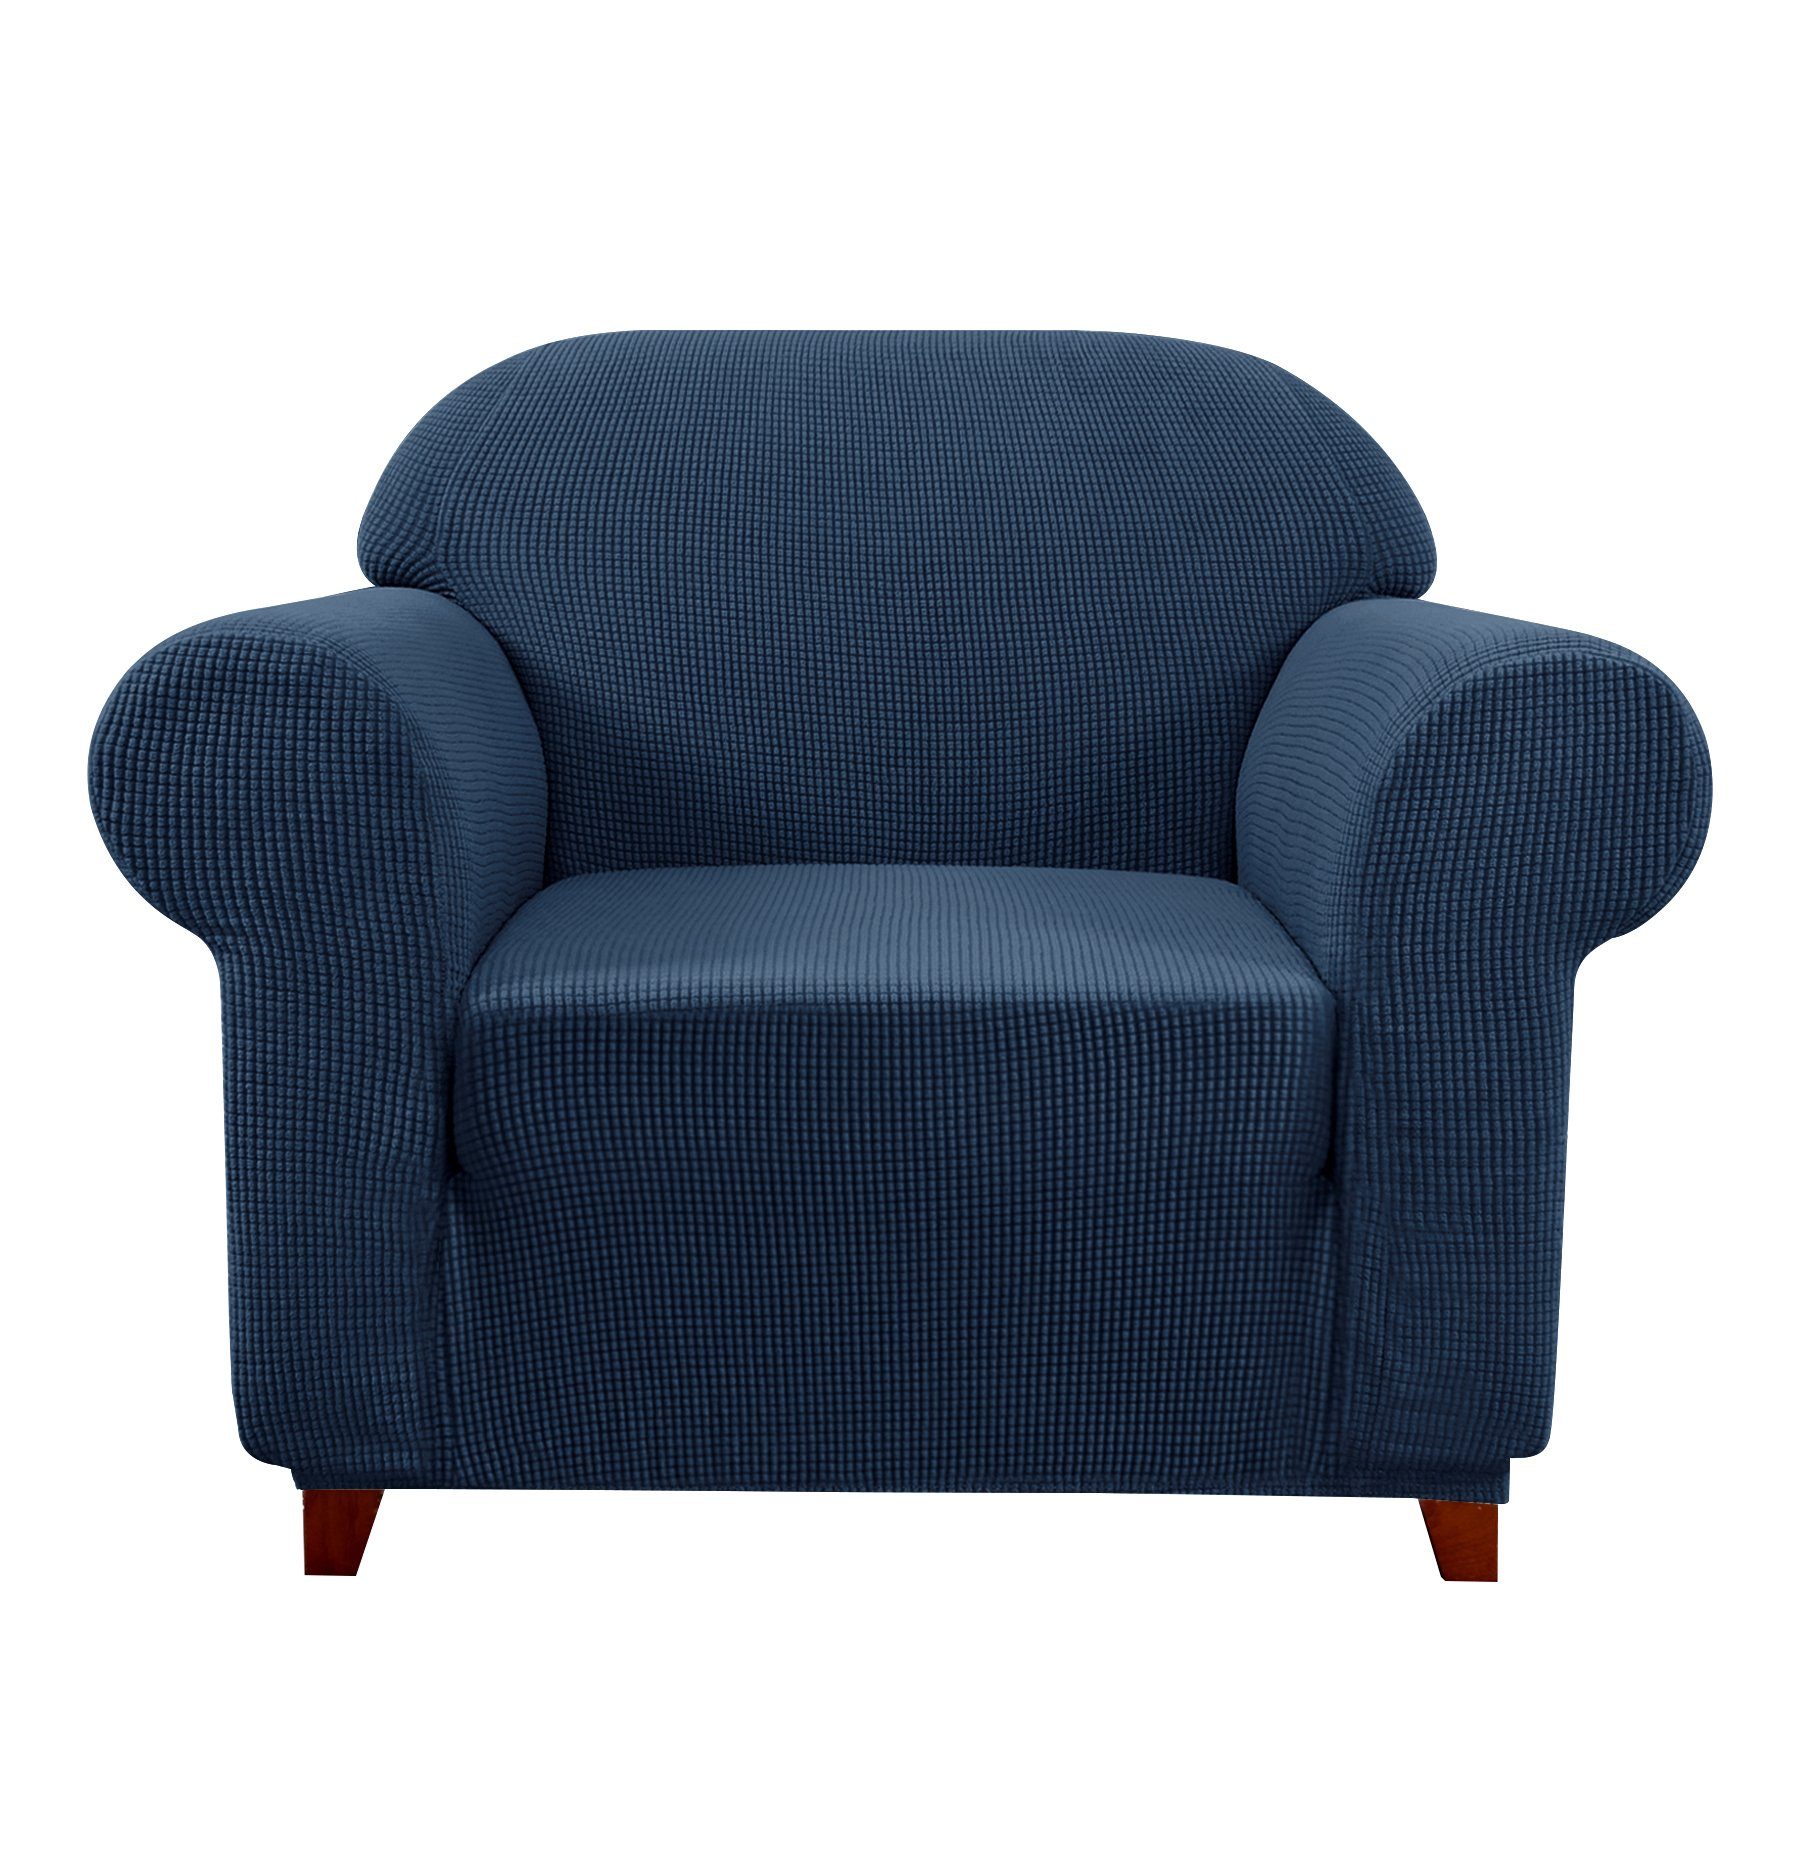 Sofahusse 1 Sitzer Sofabezug, SUBRTEX, Dehnbarer waschbarer Stoff Navy blau